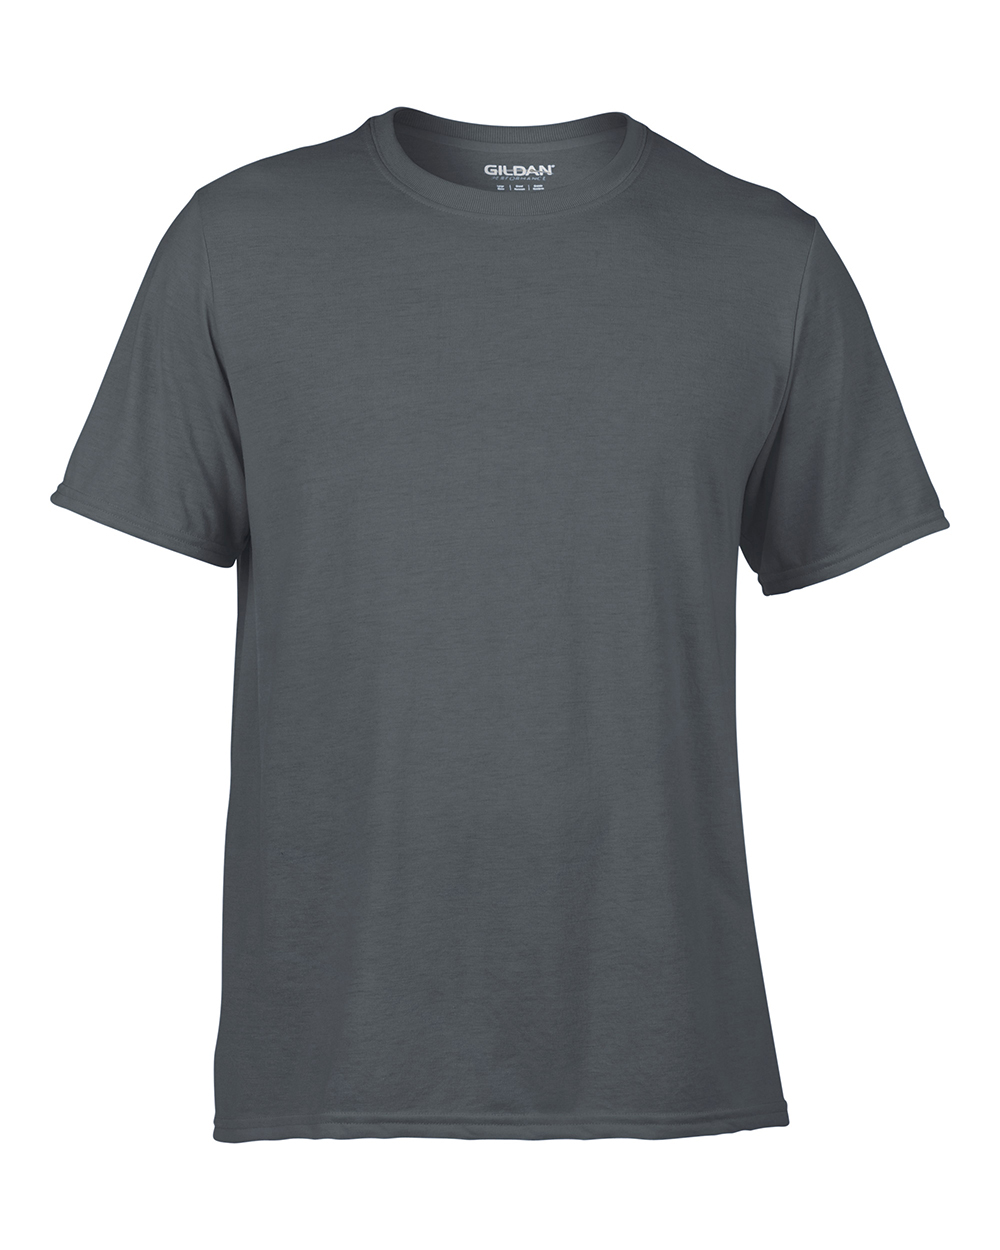 T-Shirts: Gildan 42000 — The Awards Place